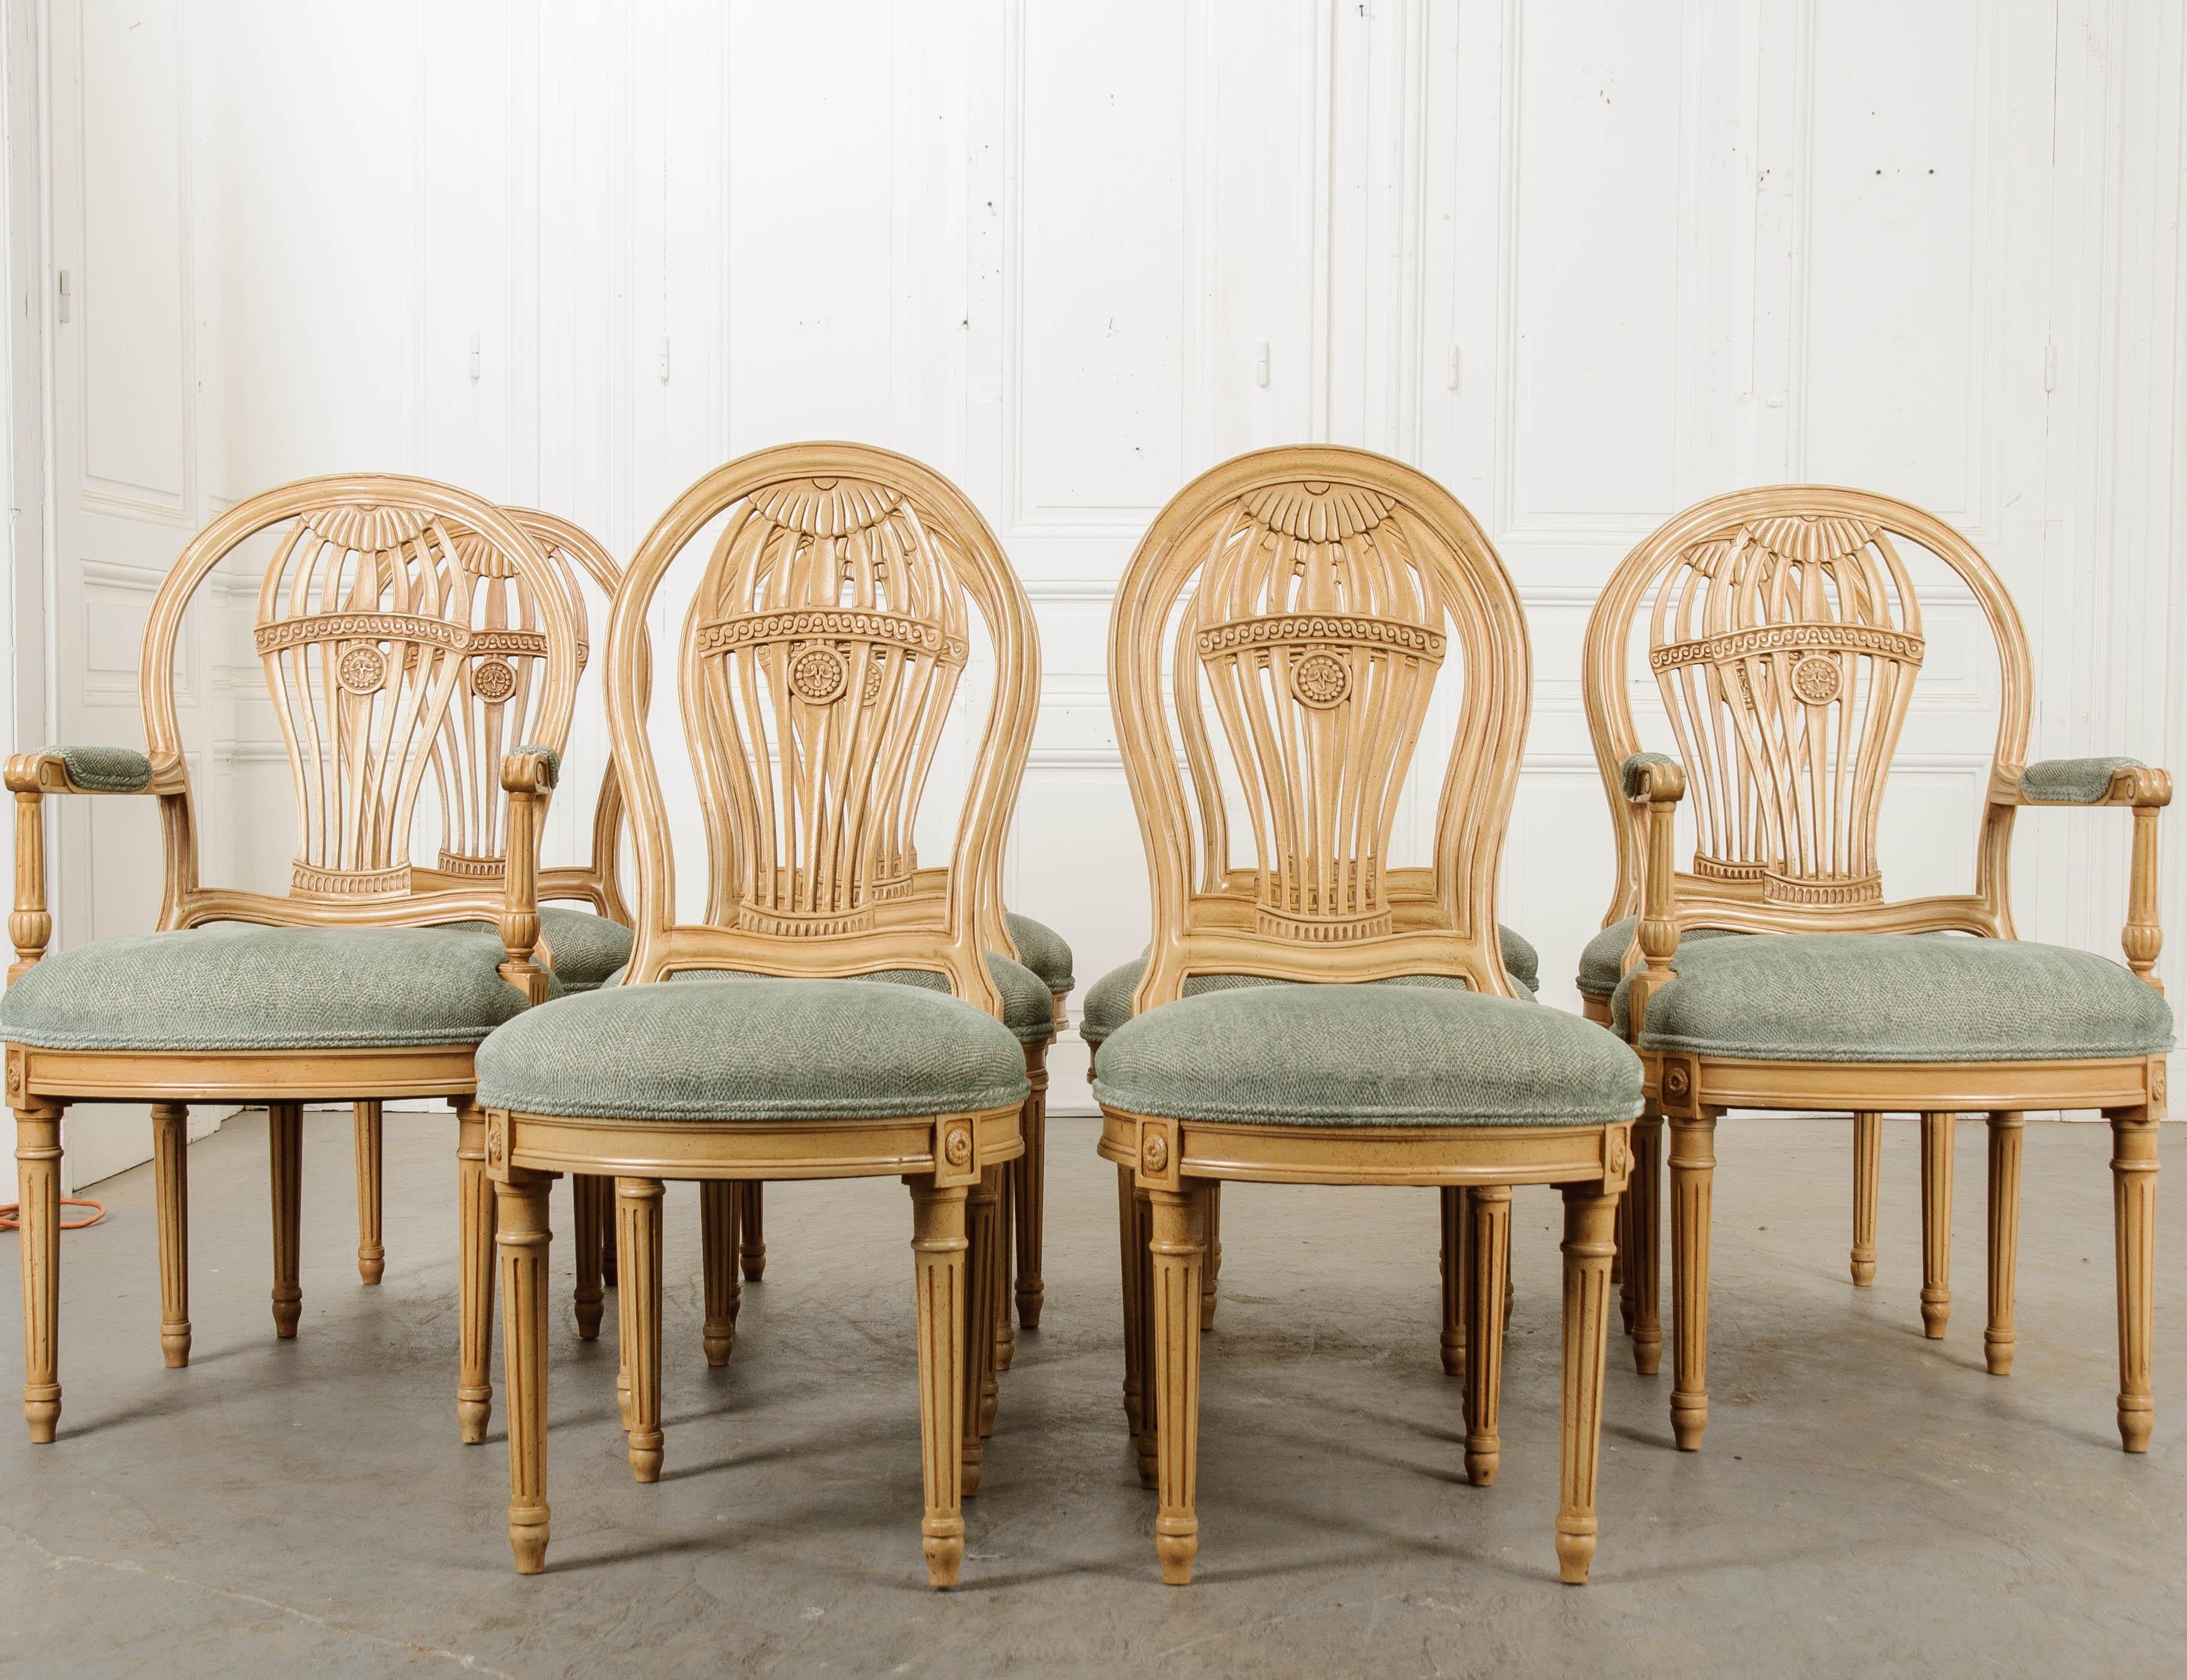 Un ensemble fantaisiste de chaises de salle à manger rembourrées de reproduction française, produites au 20e siècle. L'ensemble comprend quatre chaises d'appoint et deux fauteuils. Ils ont des cadres peints qui ont l'apparence d'antiquités. Leur